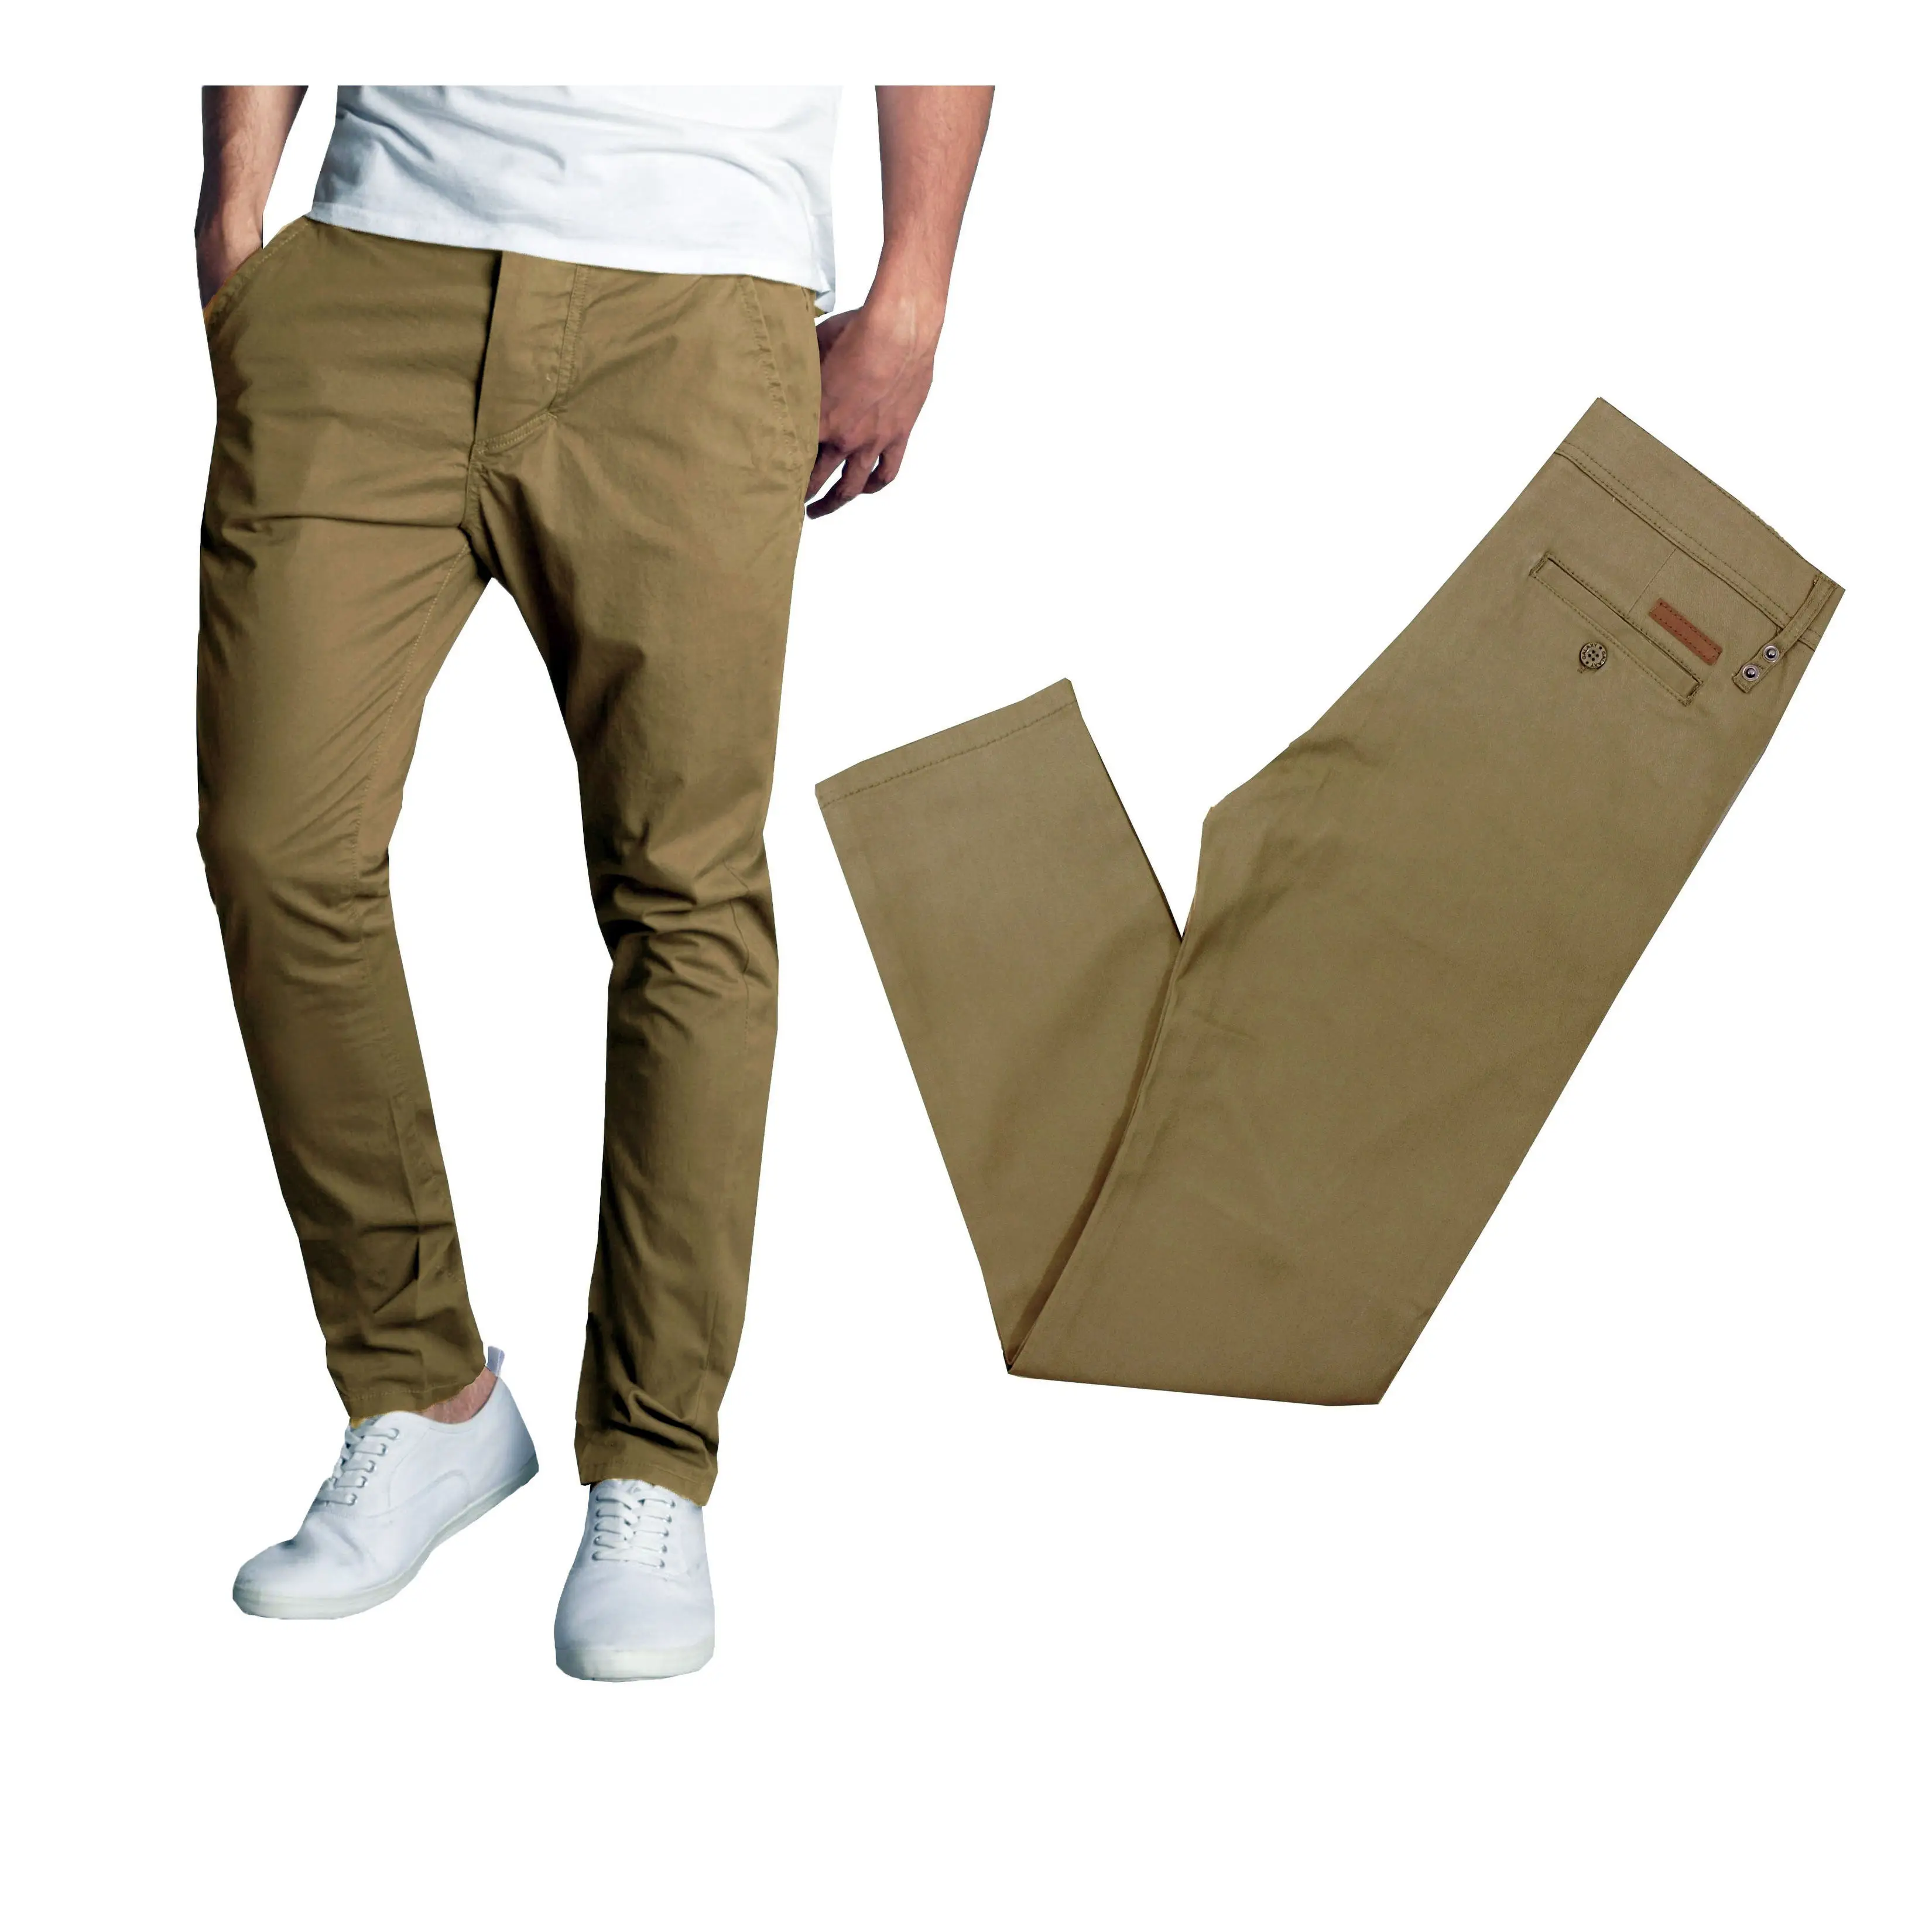 100% Cotton Men's Plain Khaki Color Business Chino Pants